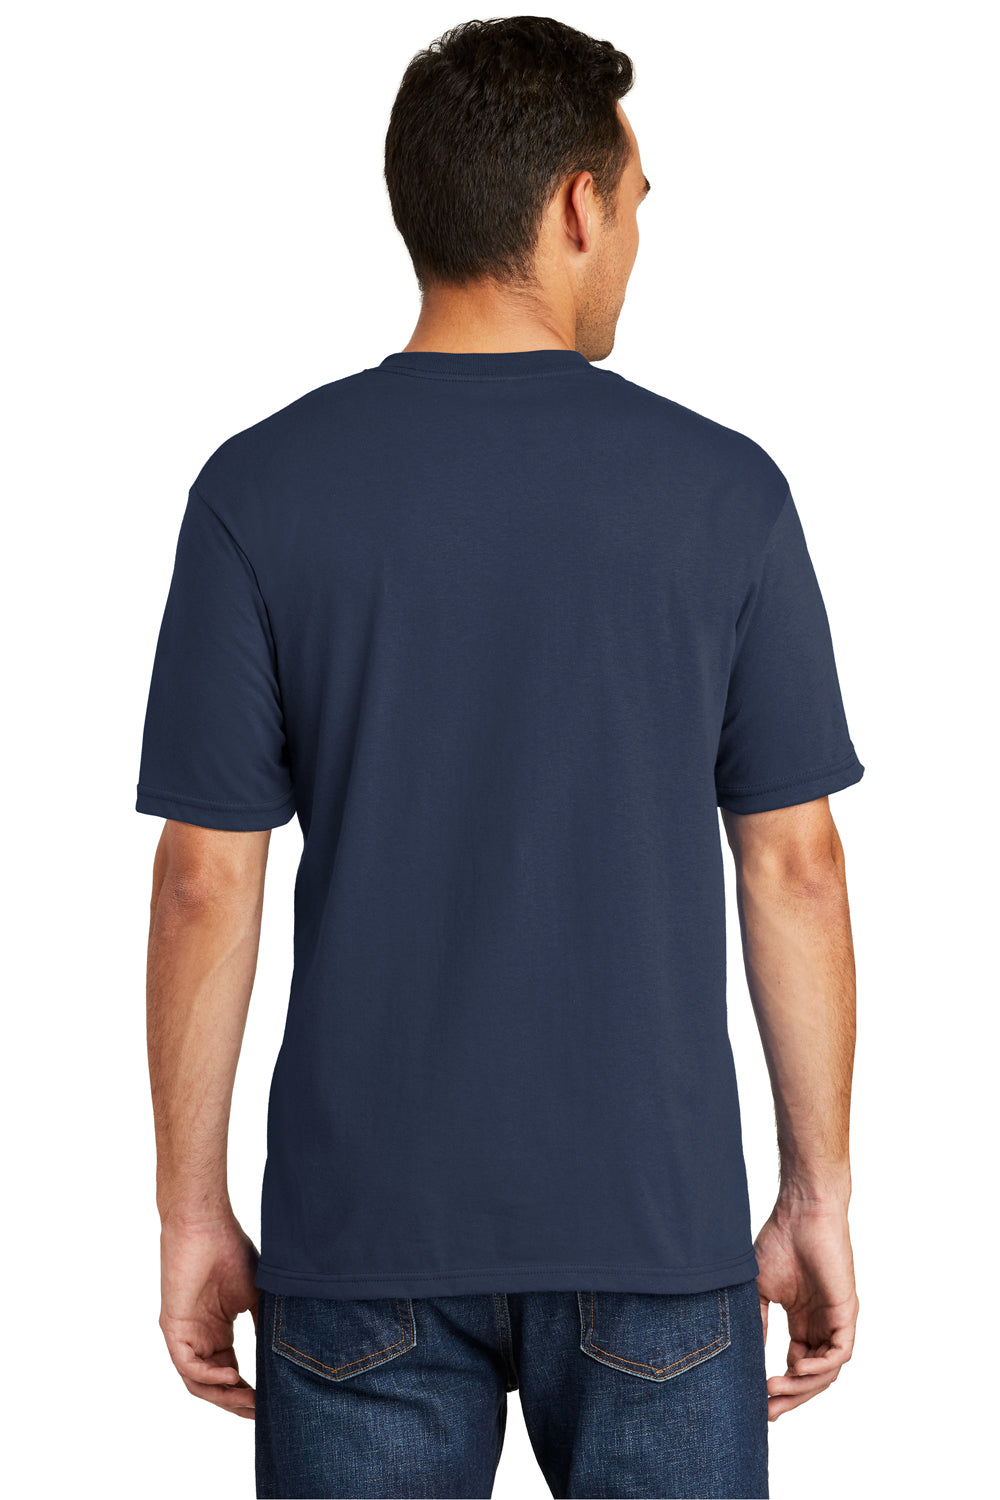 Port & Company USA100P Mens USA Made Short Sleeve Crewneck T-Shirt w/ Pocket Navy Blue Back